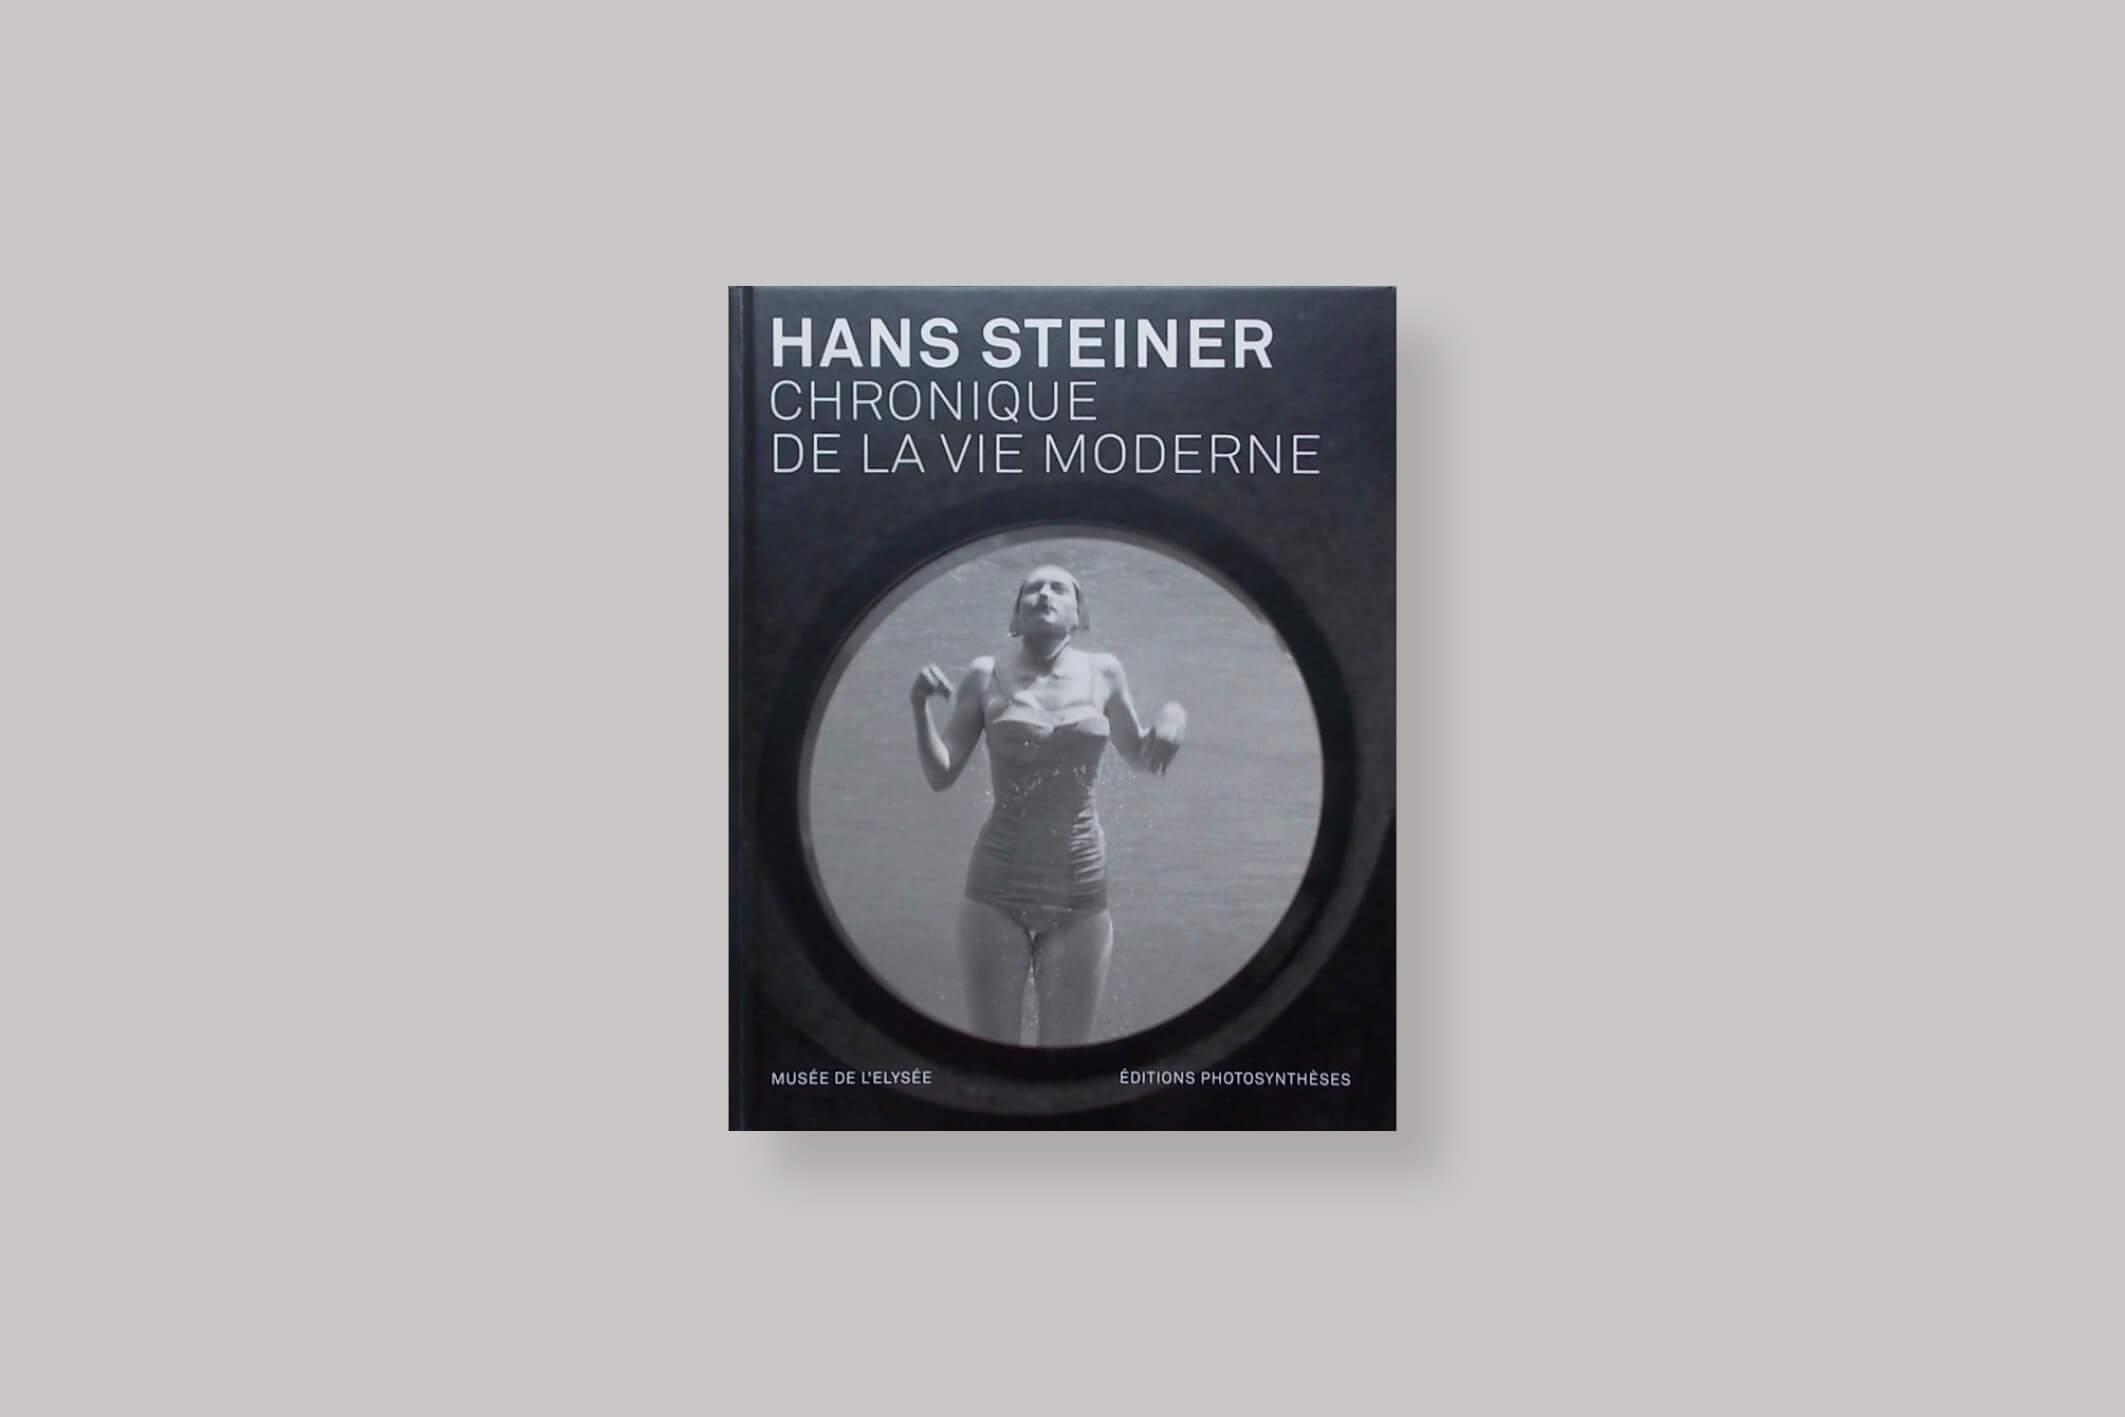 chronique-de-la-vie-moderne-hans-steiner-editions-photosyntheses-cover